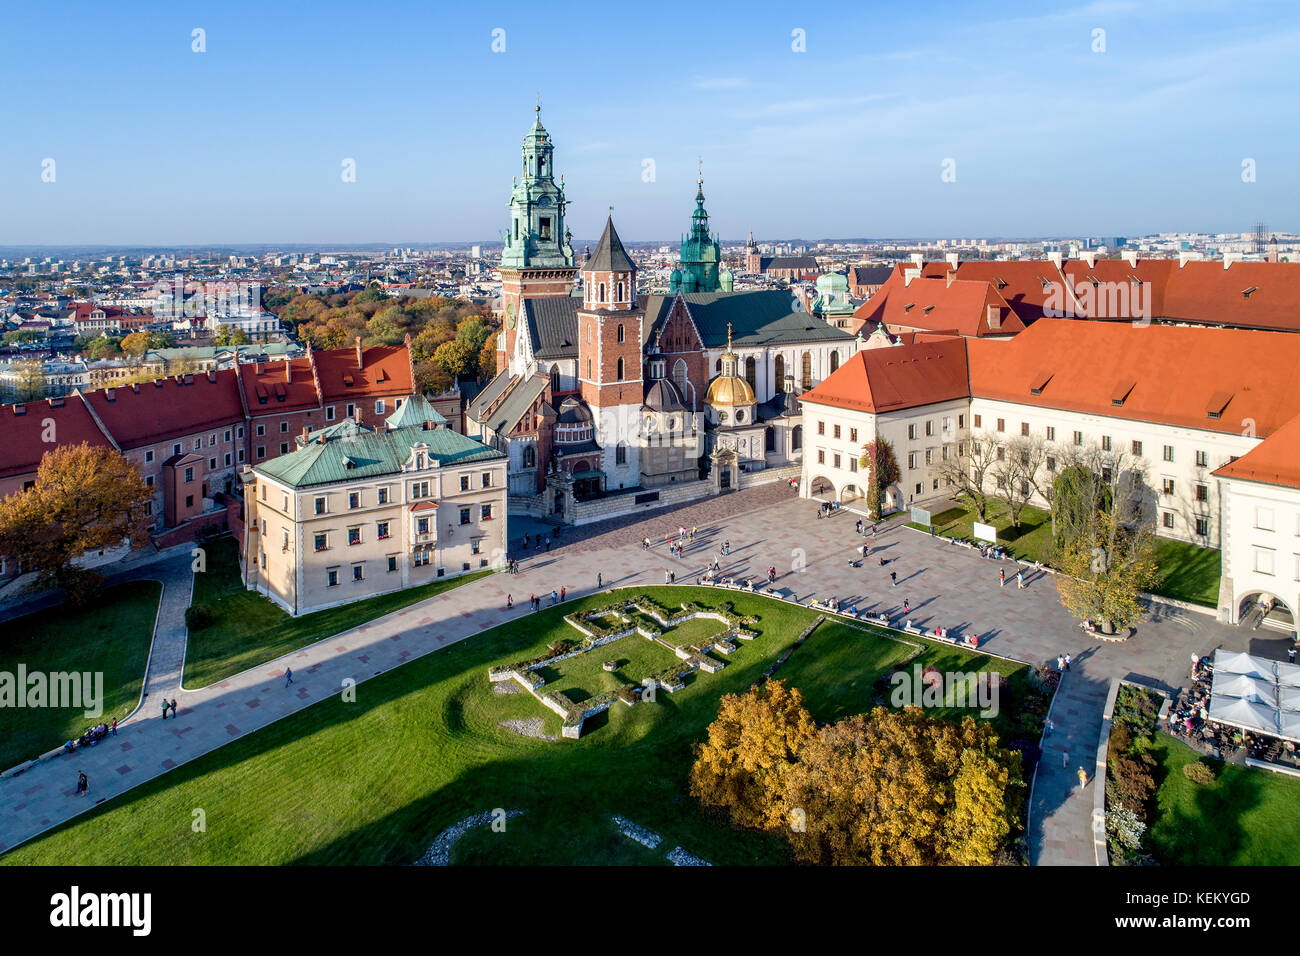 Royal gotische Kathedrale auf dem Wawel in Krakau, Polen, mit Renaissance sigmund Kapelle mit goldenen Kuppel, Teil von Schloss Wawel, Hof, Park und Touristen. Stockfoto